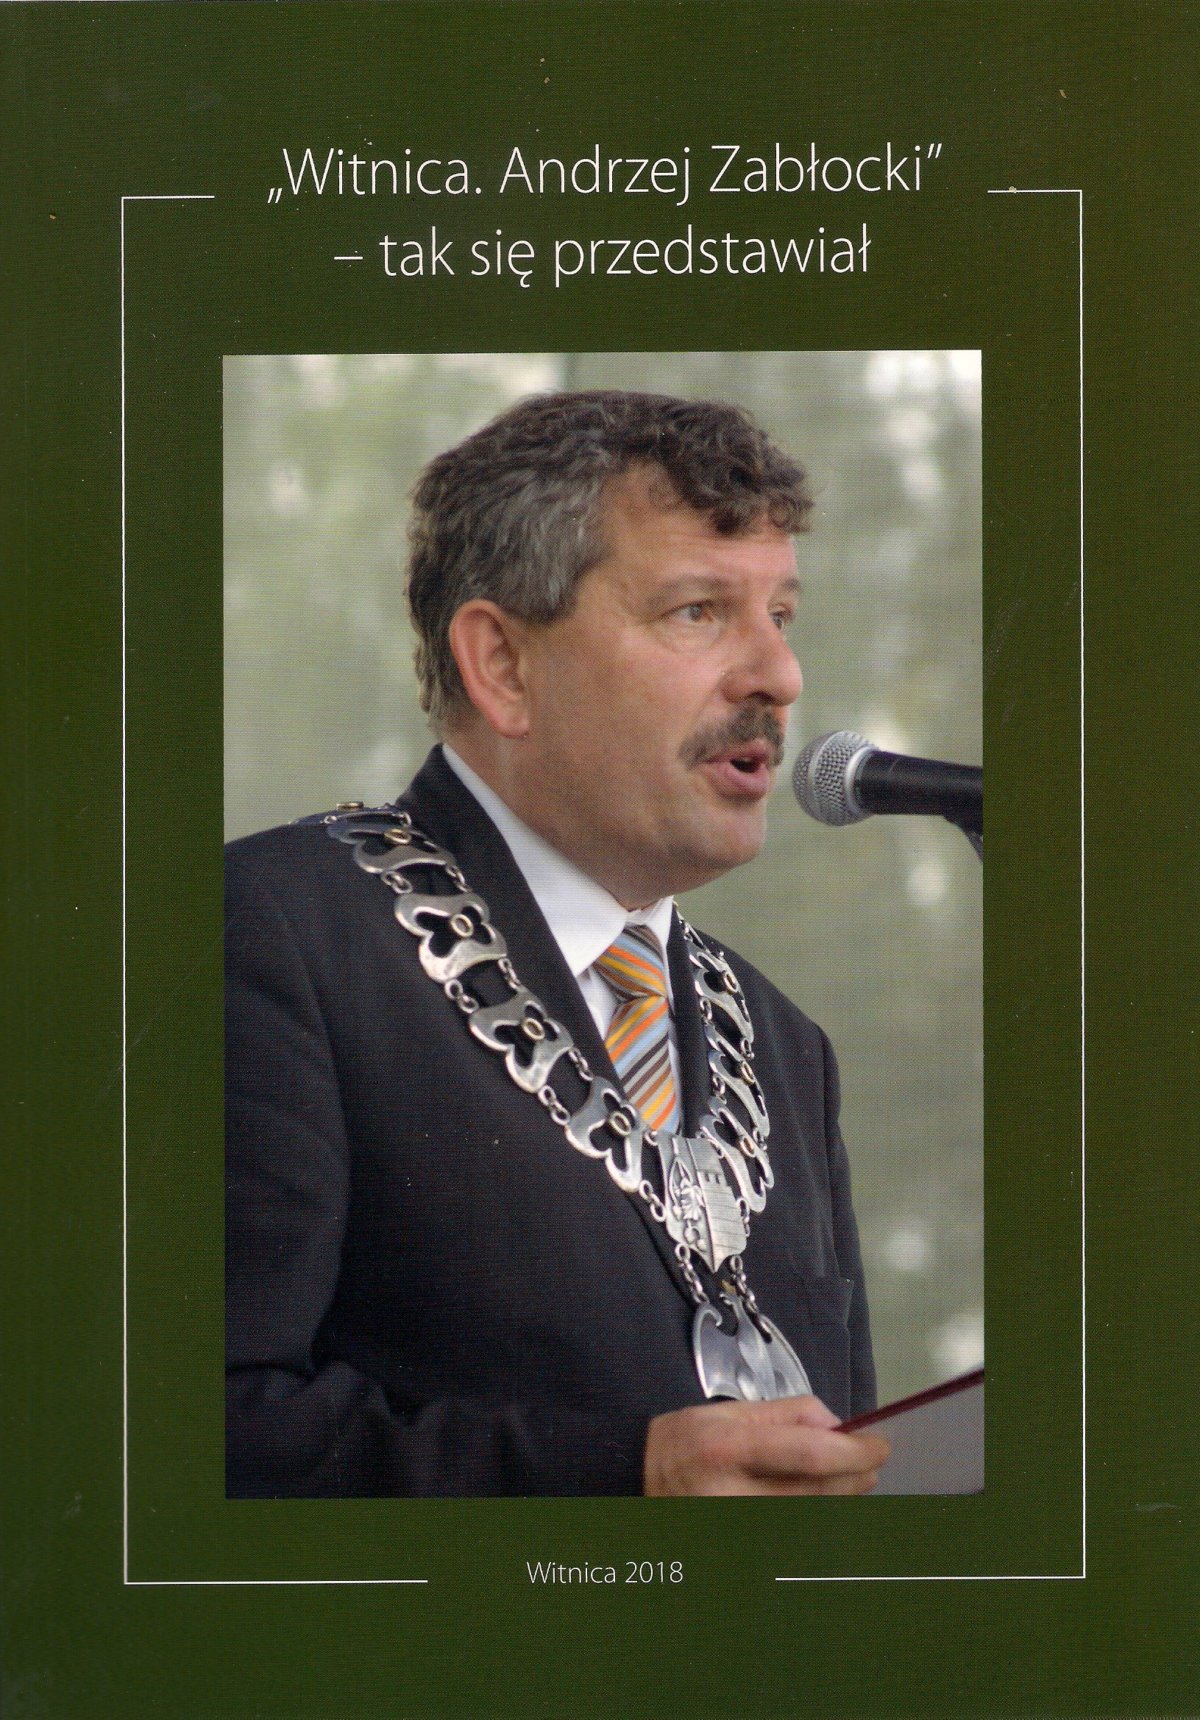 Andrzej Zabłocki przez 24 lata (1990-2014, sześć kadencji) był burmistrzem Witnicy. Pełnił jeszcze wiele innych funkcji lokalnych, regionalnych, a nawet zagranicznych, ale jedną szczególną: od 1998 do 2016 r. był prezesem Polsko-Niemieckiego Stowarzyszenia „Educatio” ProEuropa Viadrina. Zmarł 29 października 2016 r., miał wtedy 58 lat.